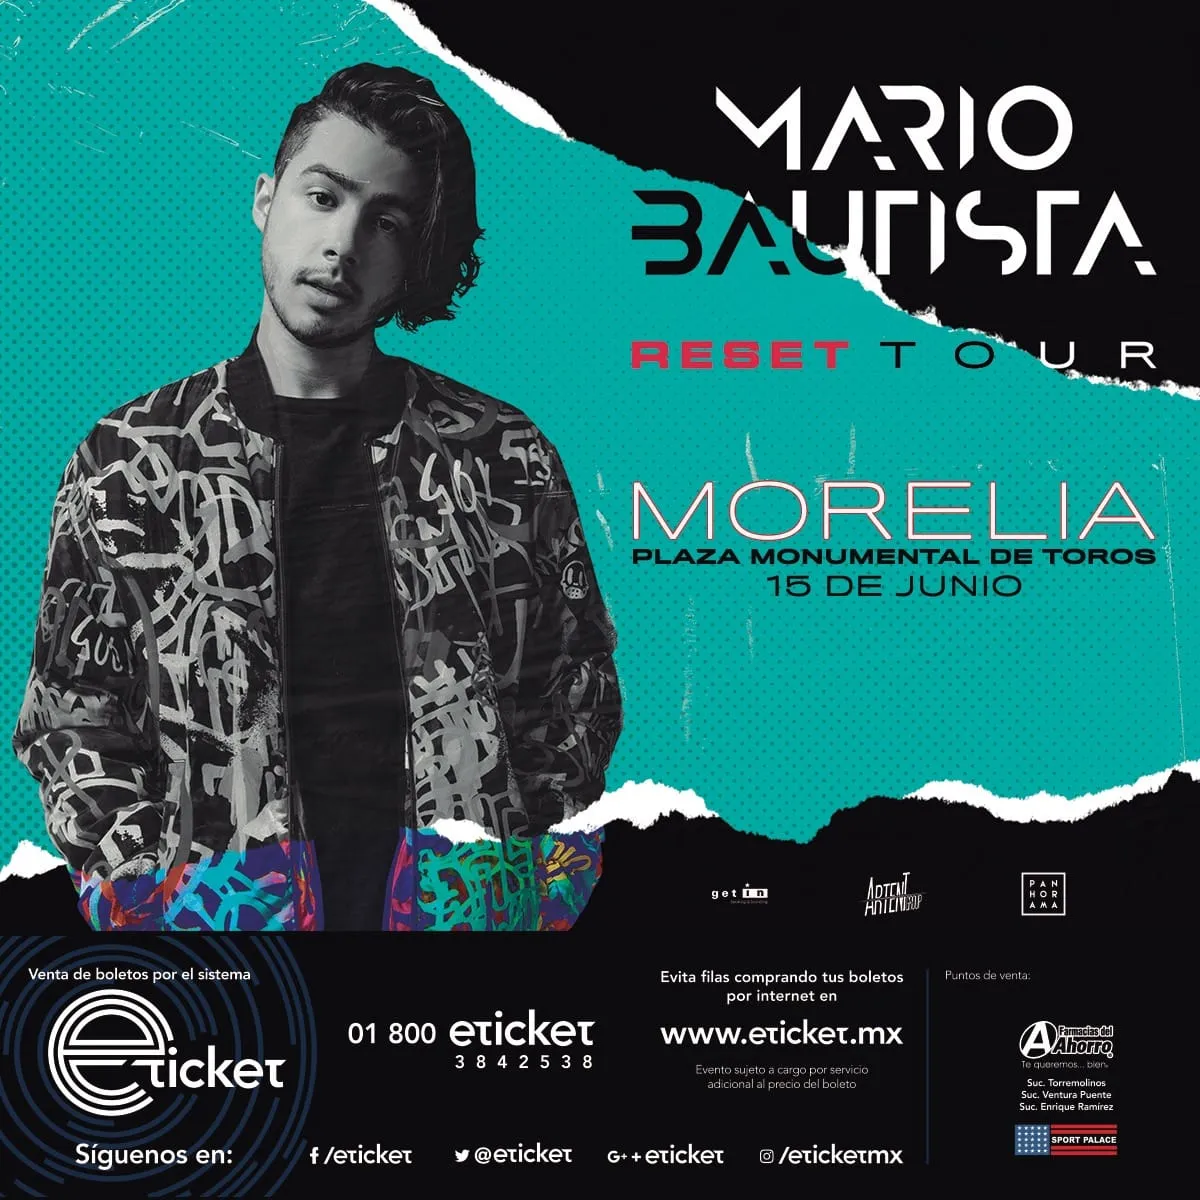 Mario Bautista regresará a Morelia para presentar el “Reset Tour”